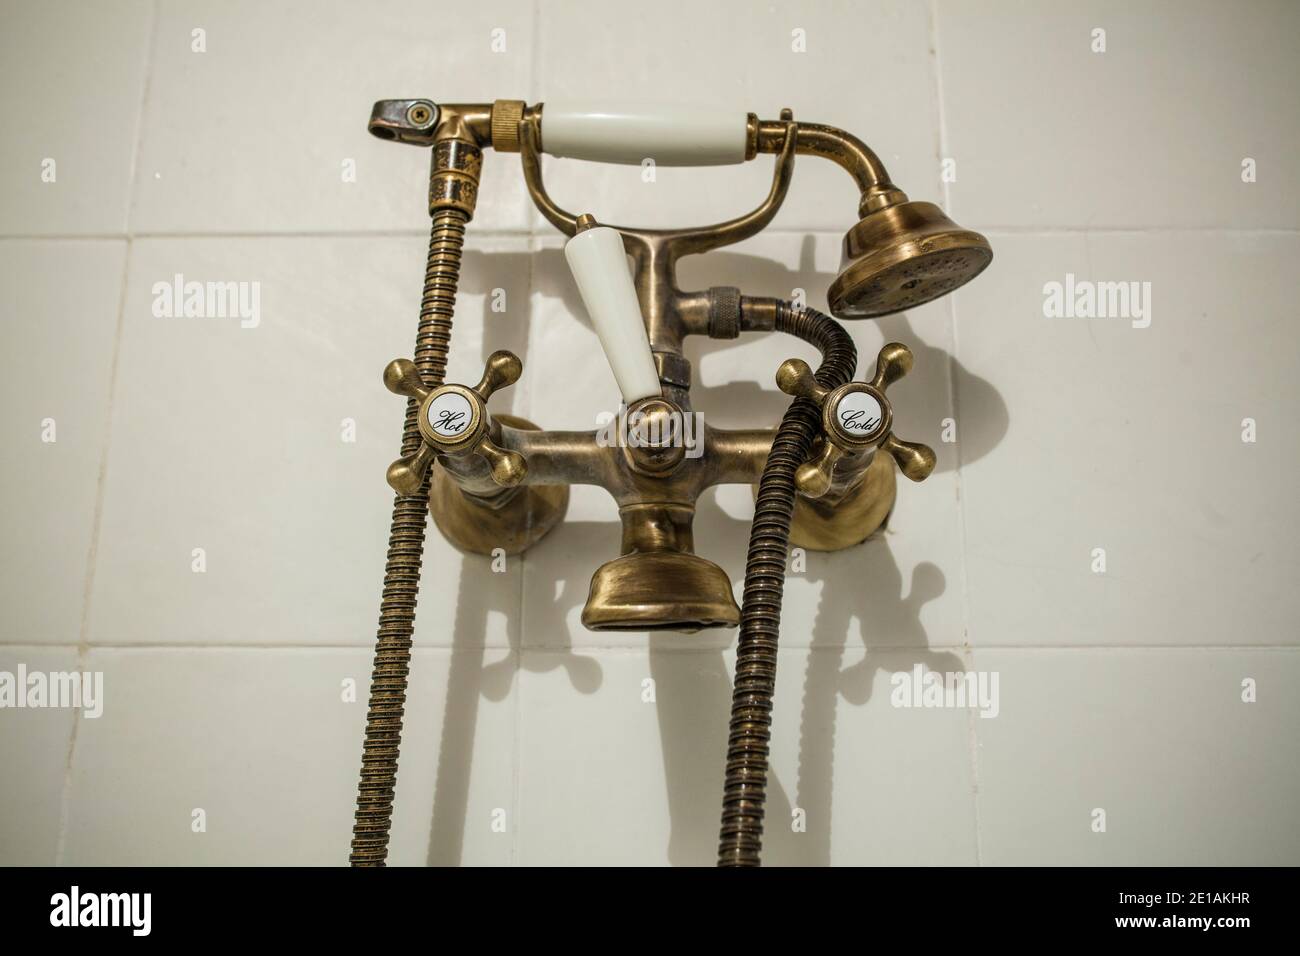 Antique Copper style bath tube faucet. Selective focus Stock Photo